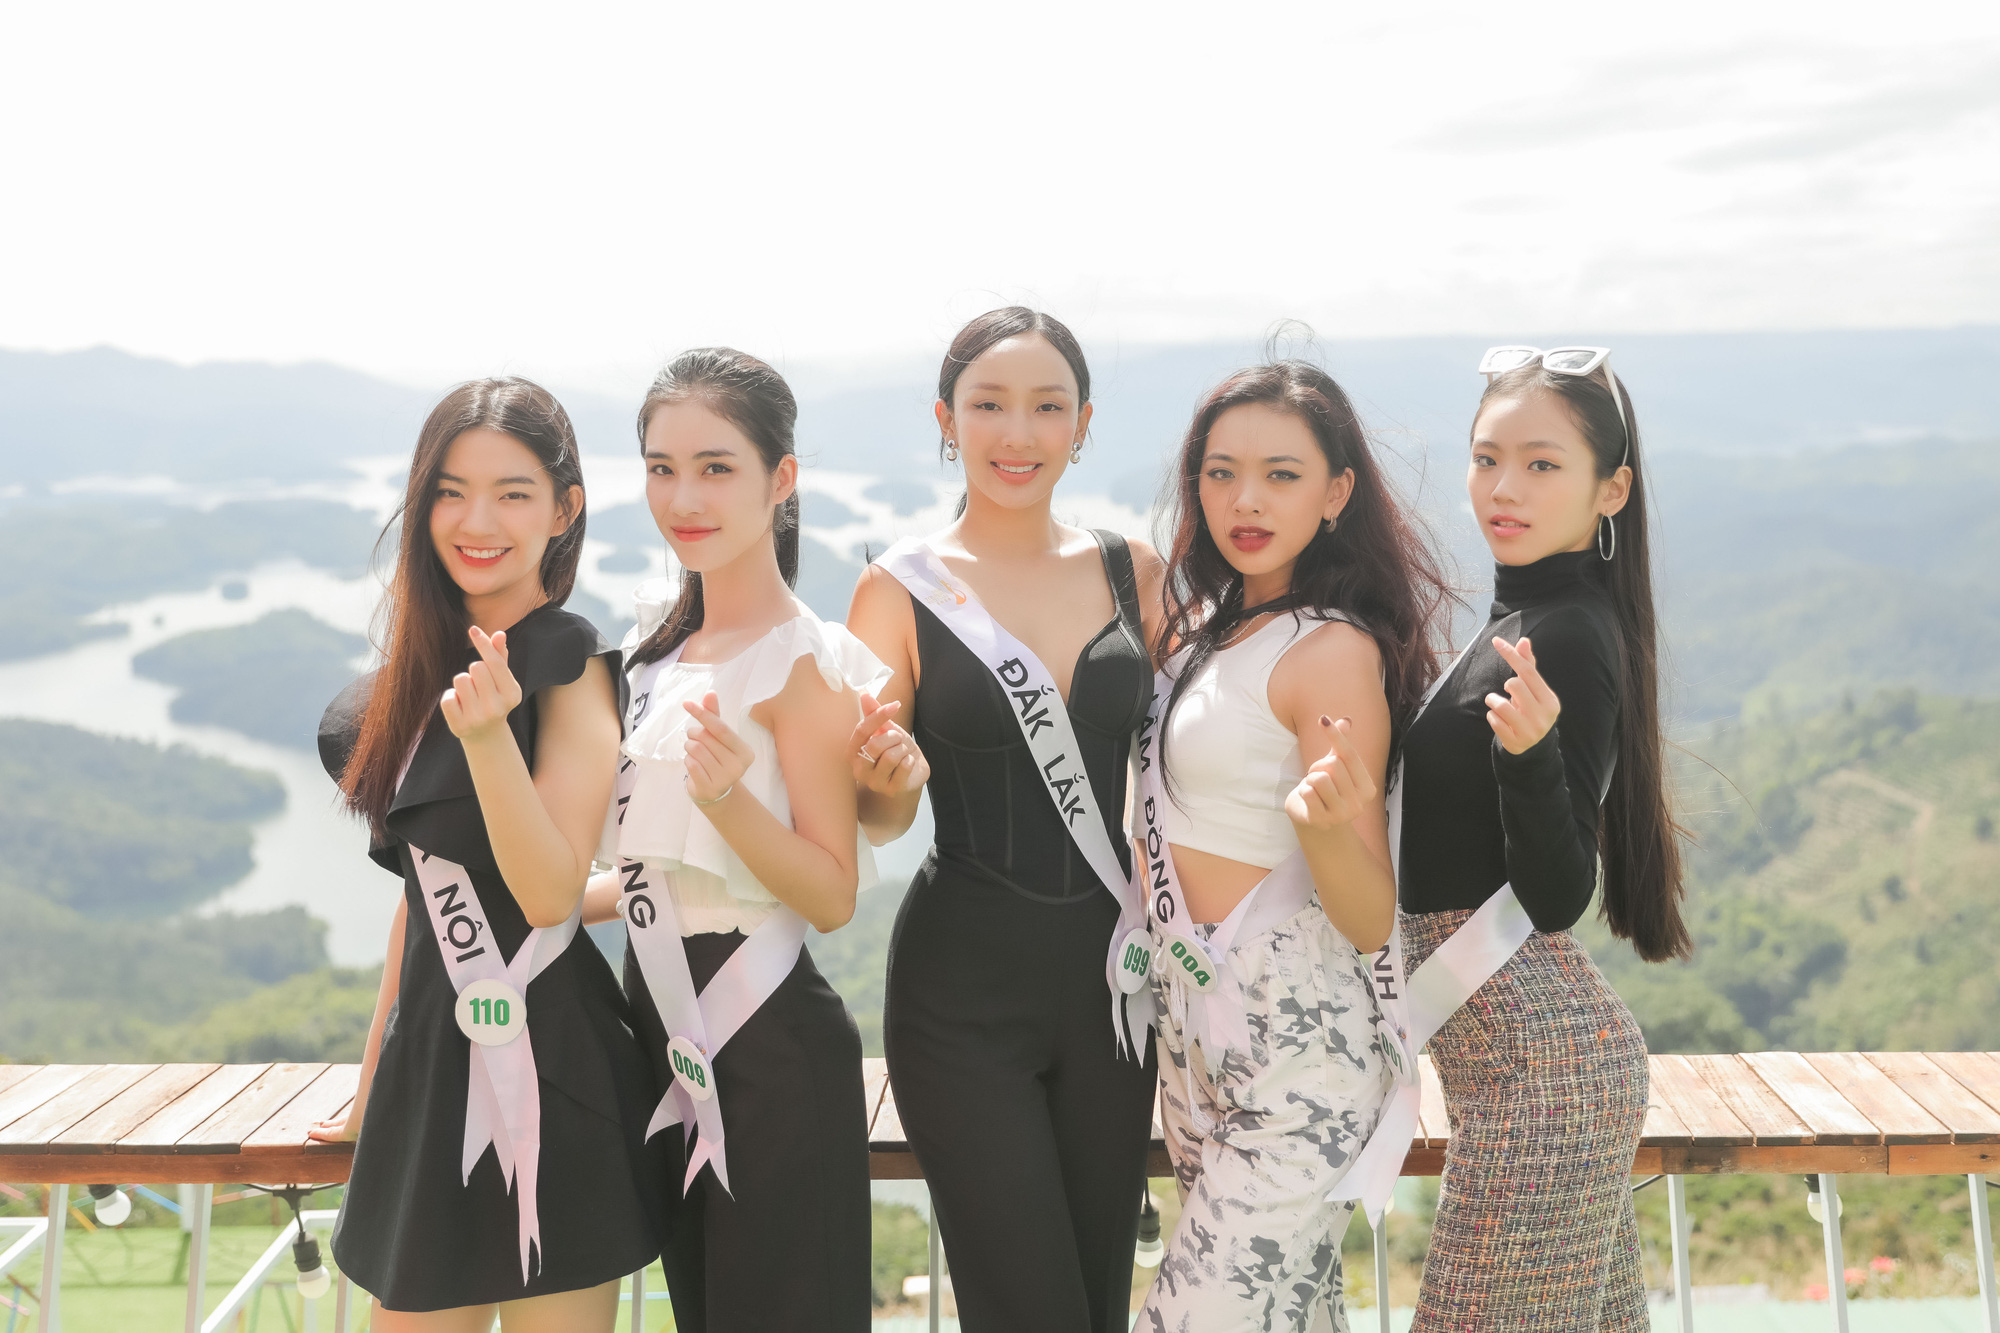 Ngắm thí sinh Miss Tourism Vietnam 2020 rạng rỡ ở  Vườn quốc gia Tà Đùng - Ảnh 5.